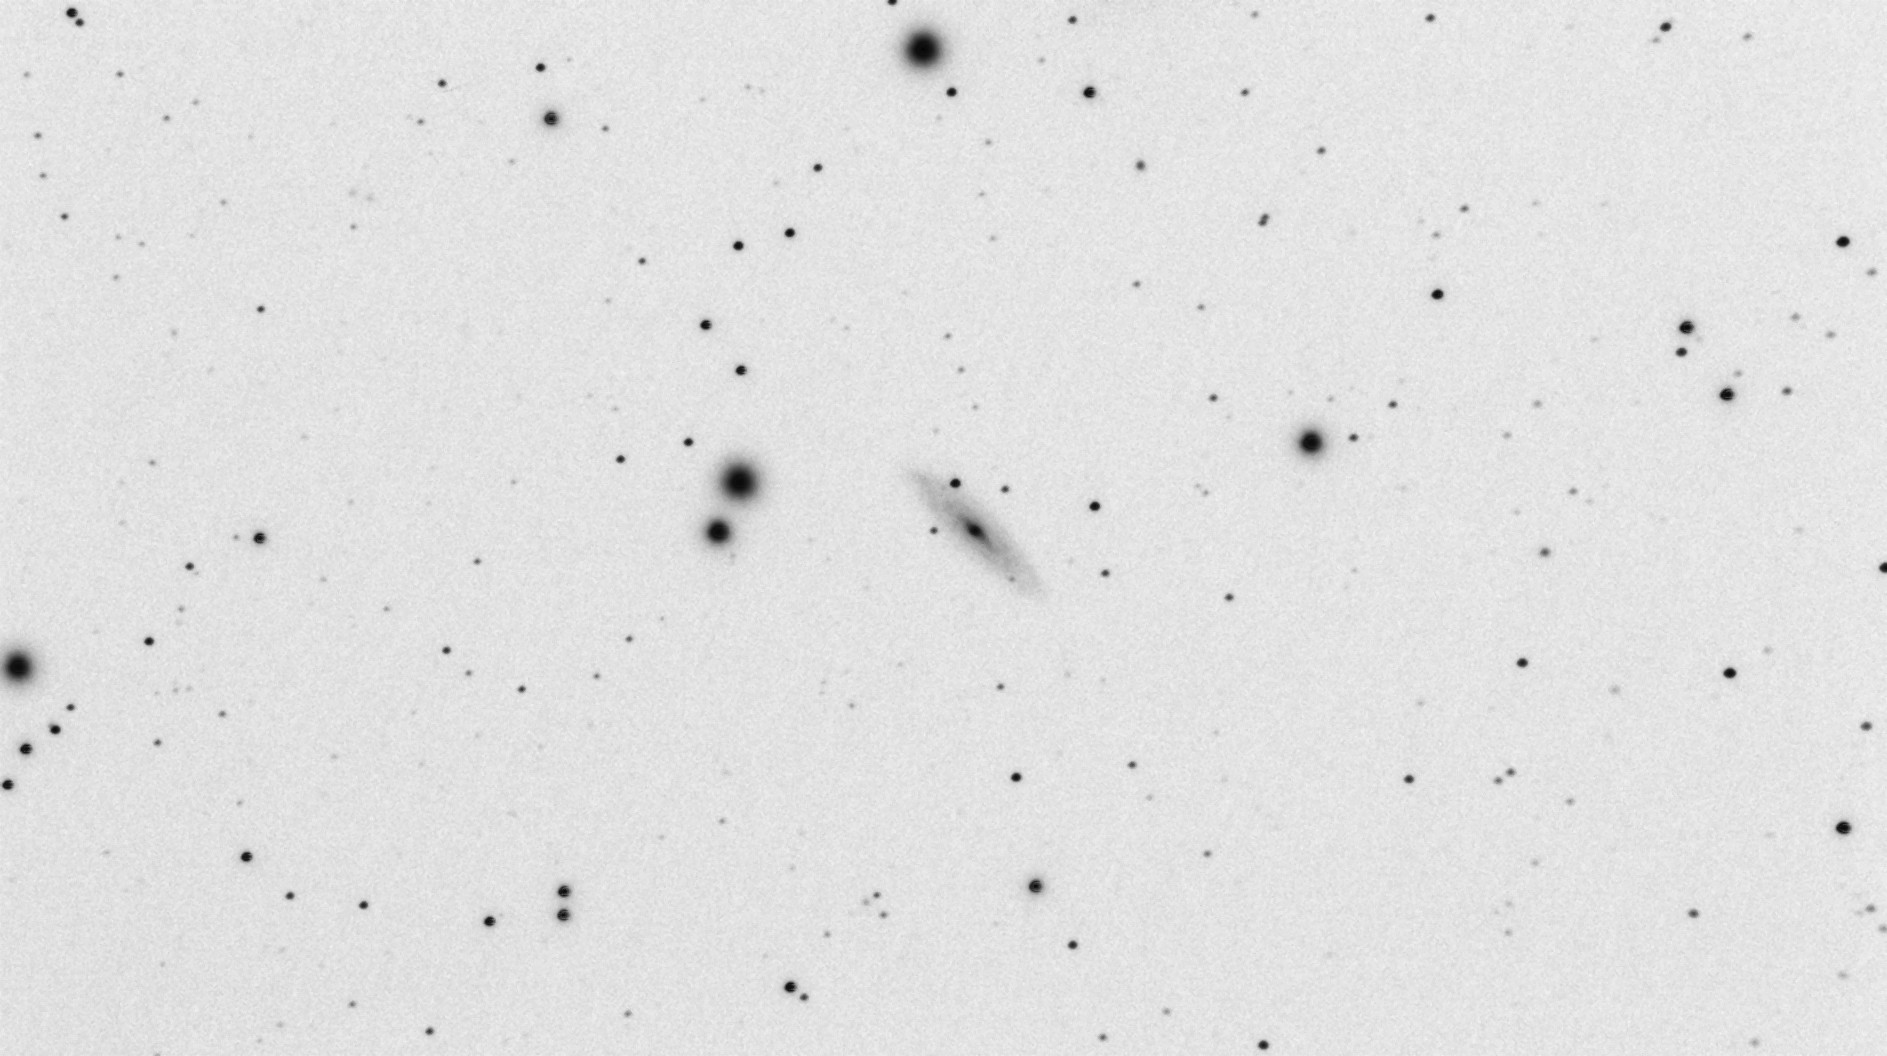 NGC-3254_SN-2019np_49m_denoise_invert_2019-02-10.jpg